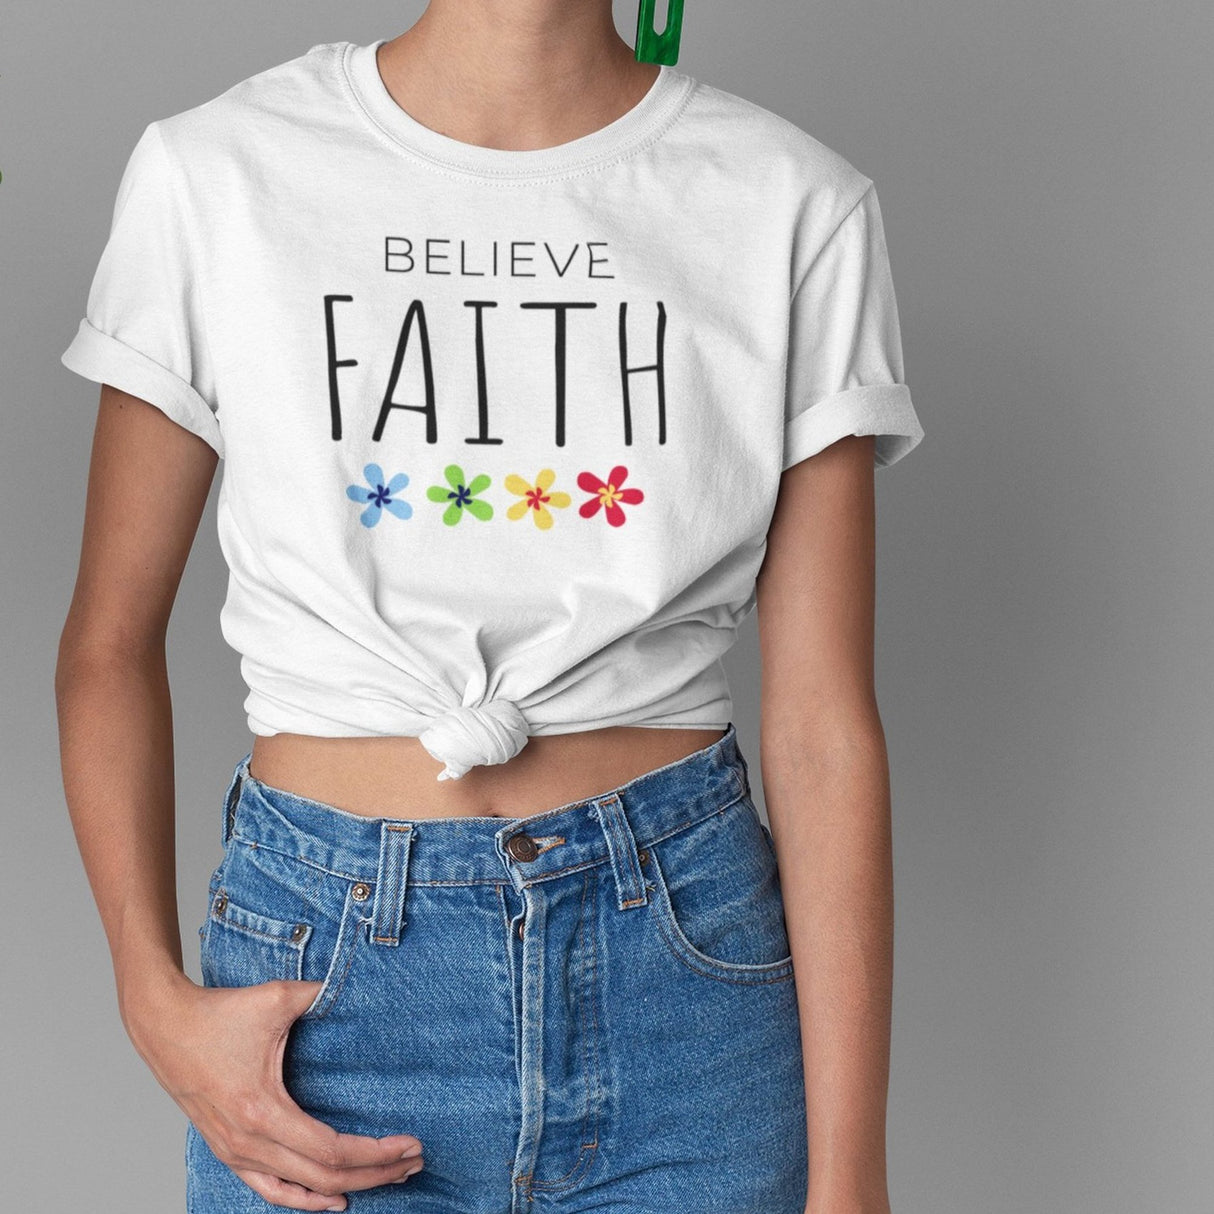 believe-faith-faith-tee-believe-t-shirt-christian-tee-jesus-t-shirt-religious-tee#color_white